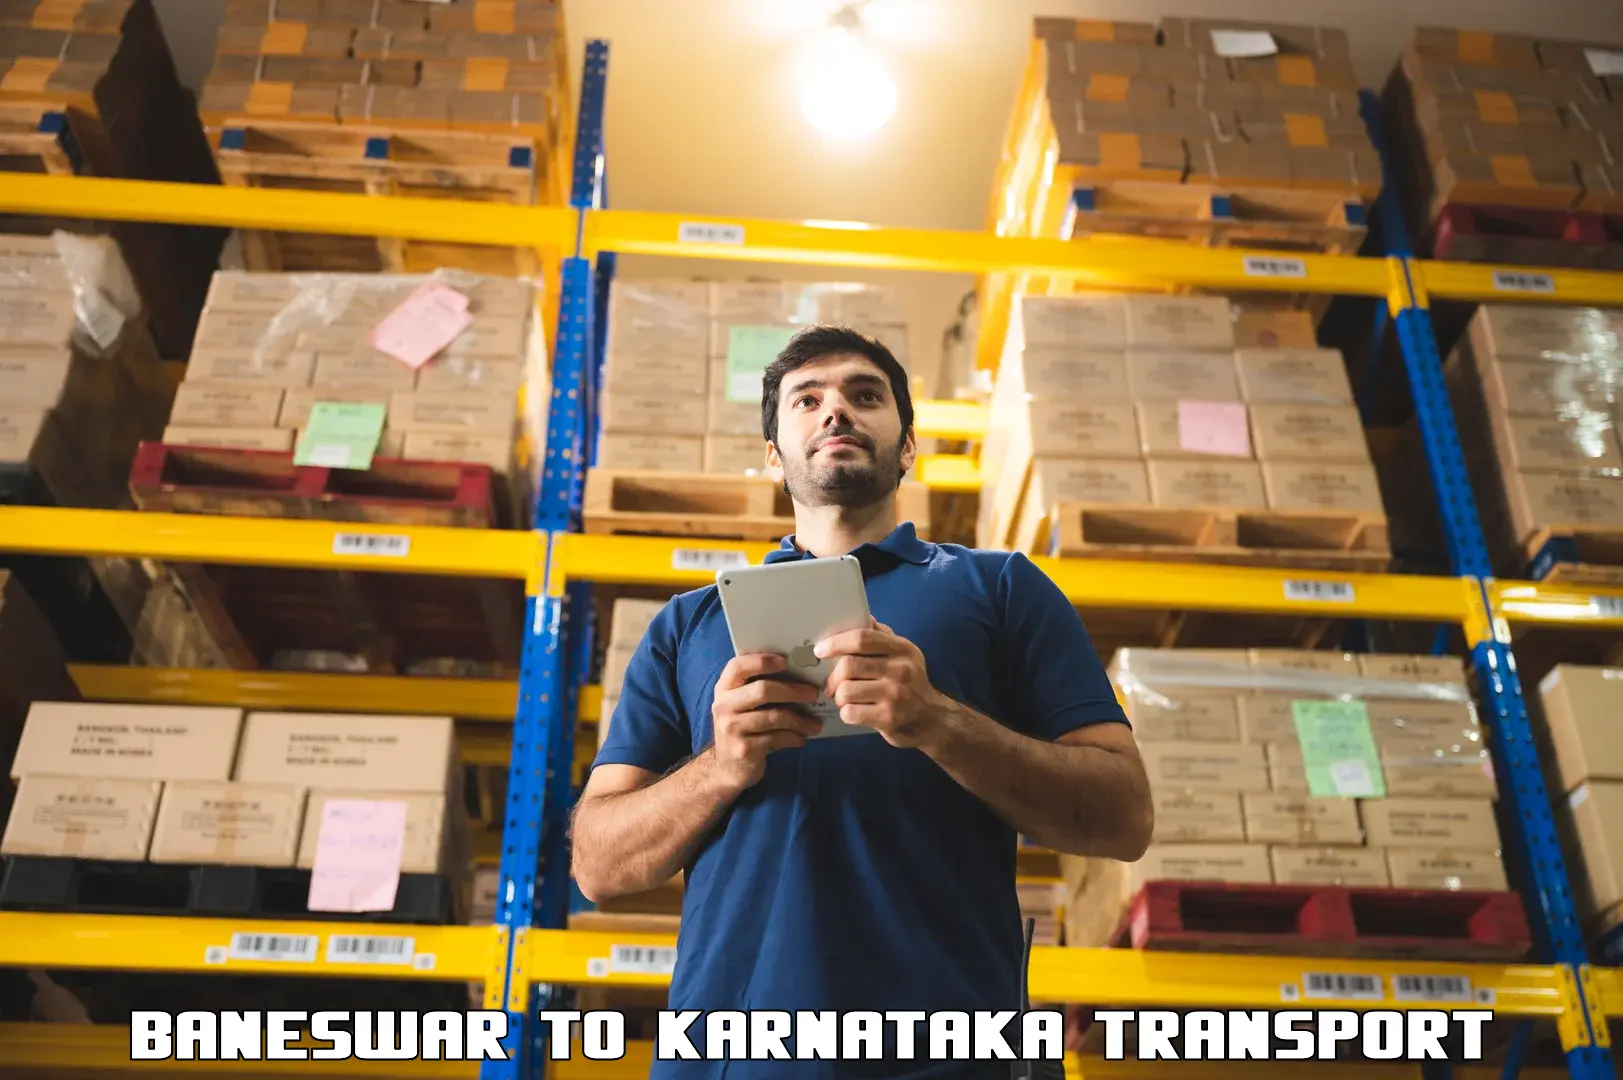 Part load transport service in India Baneswar to Karnataka